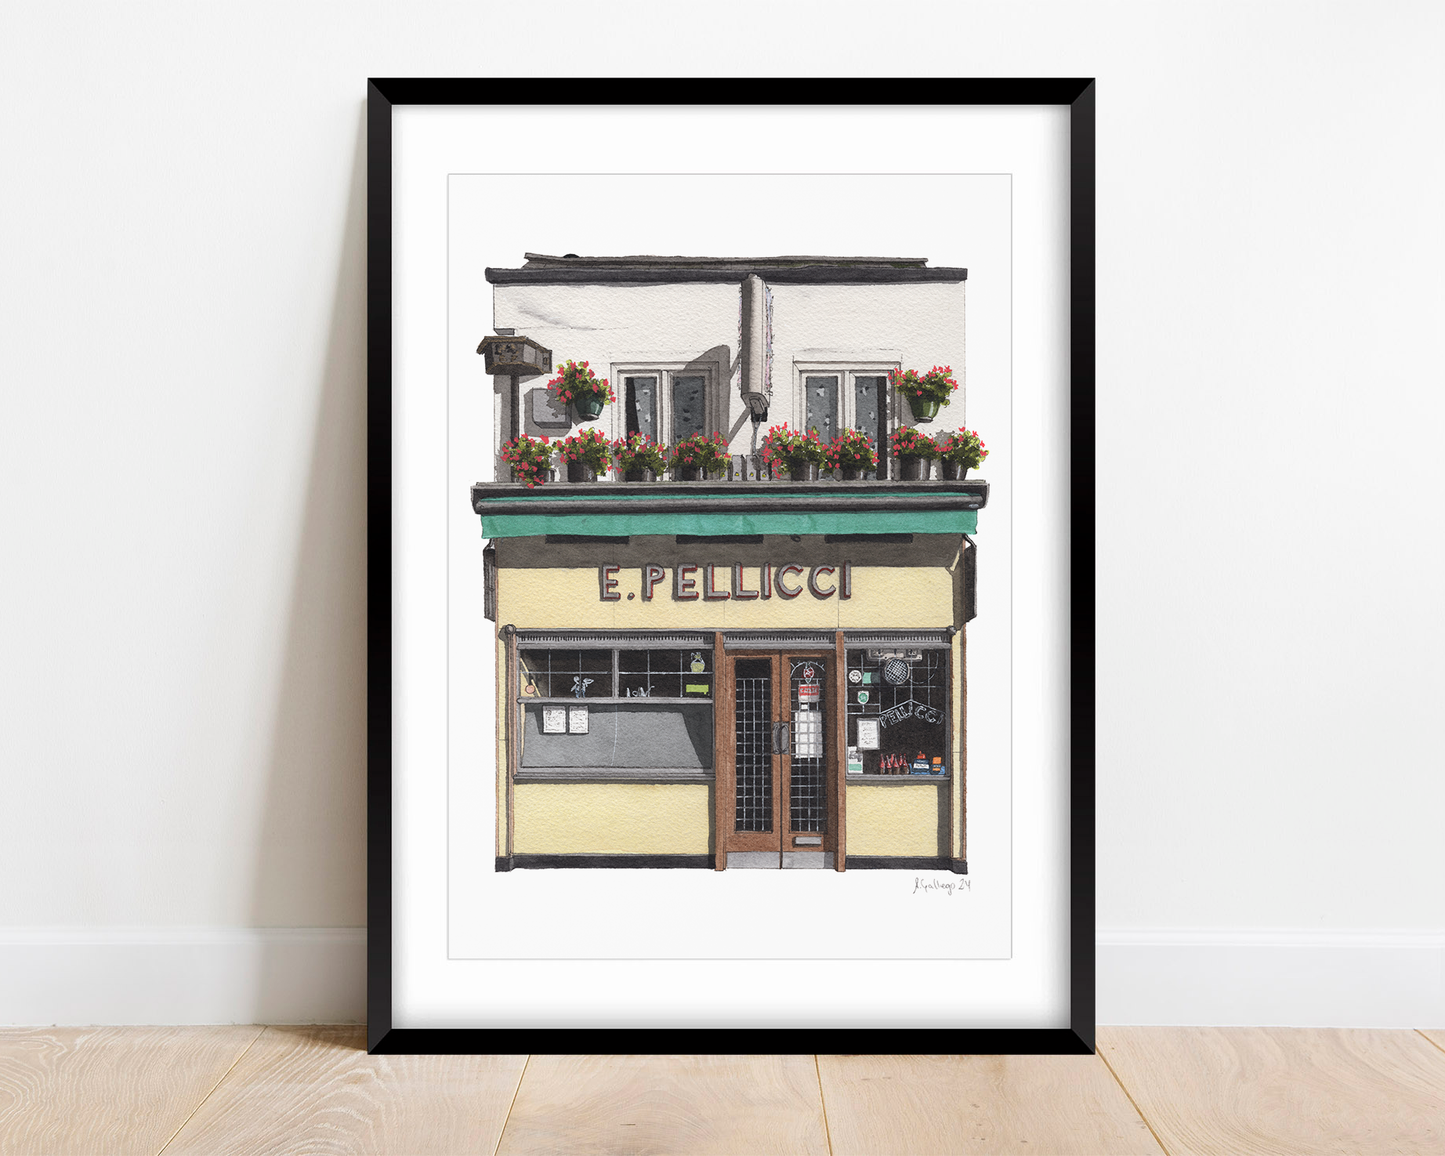 Bethnal Green - E Pellicci Cafe - Giclée Print (unframed